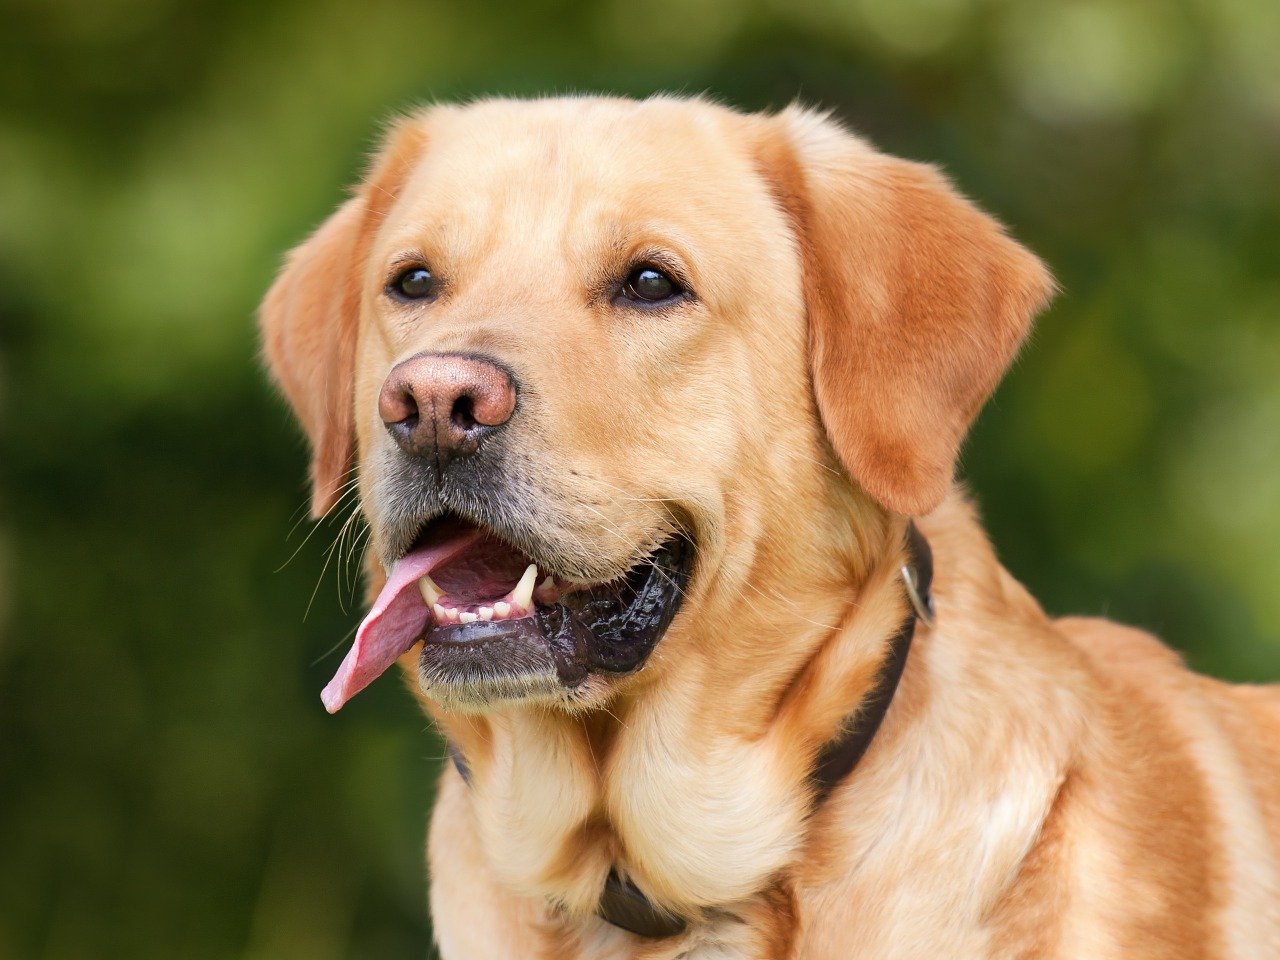 Collie – piękny i inteligentny pies pasterski o długiej sierści